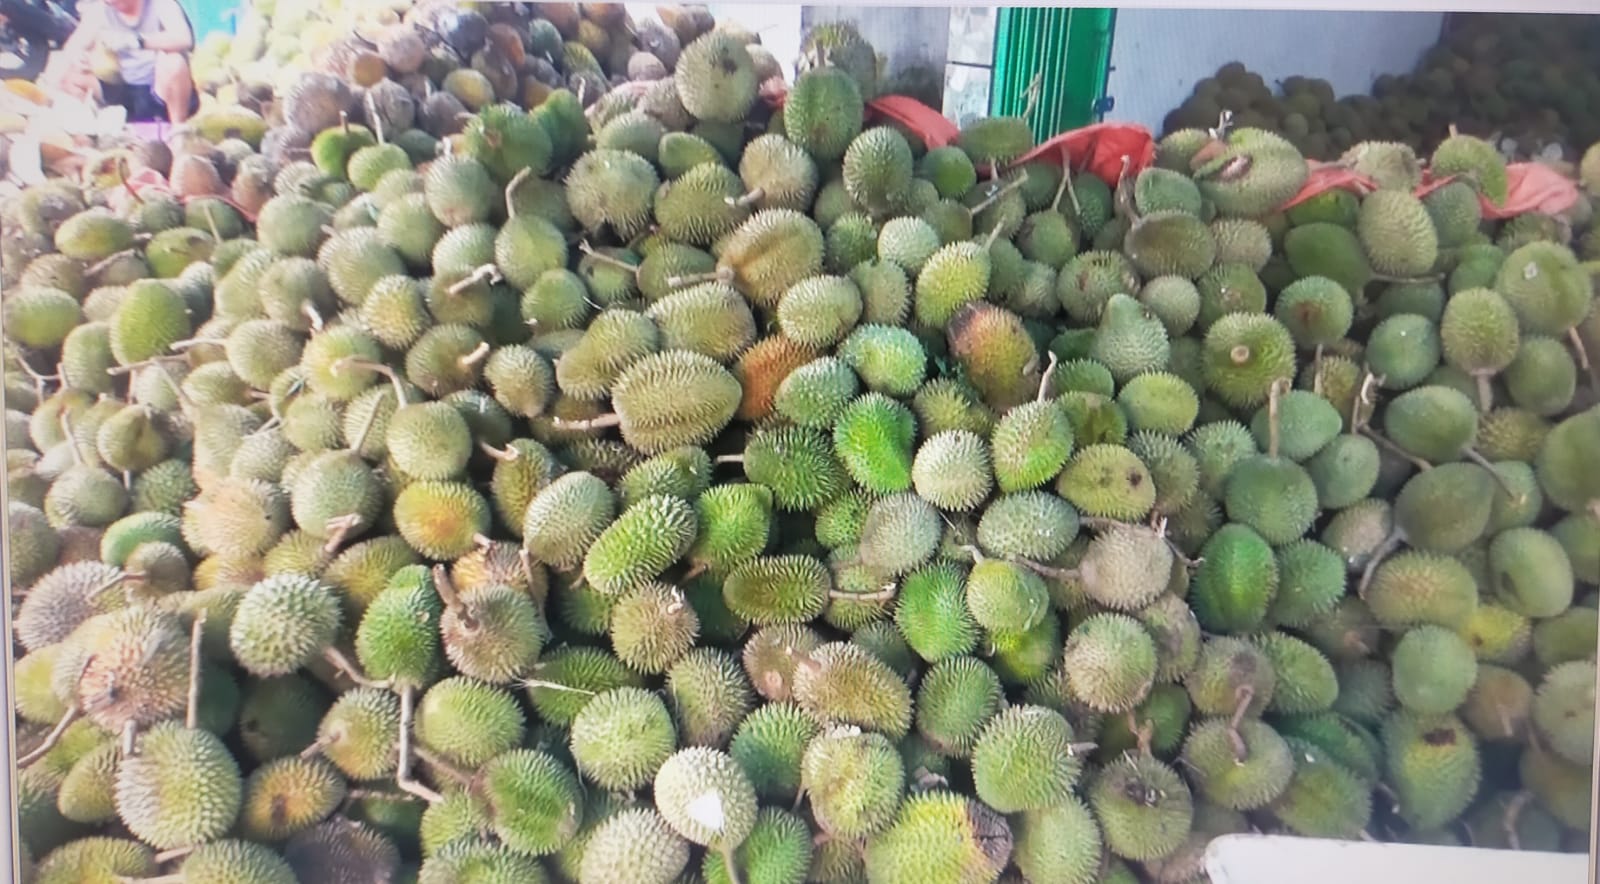 Pengepul Durian di Tugumulyo, Mampu Usaha Jual Beli Hingga 3000 Buah Durian 